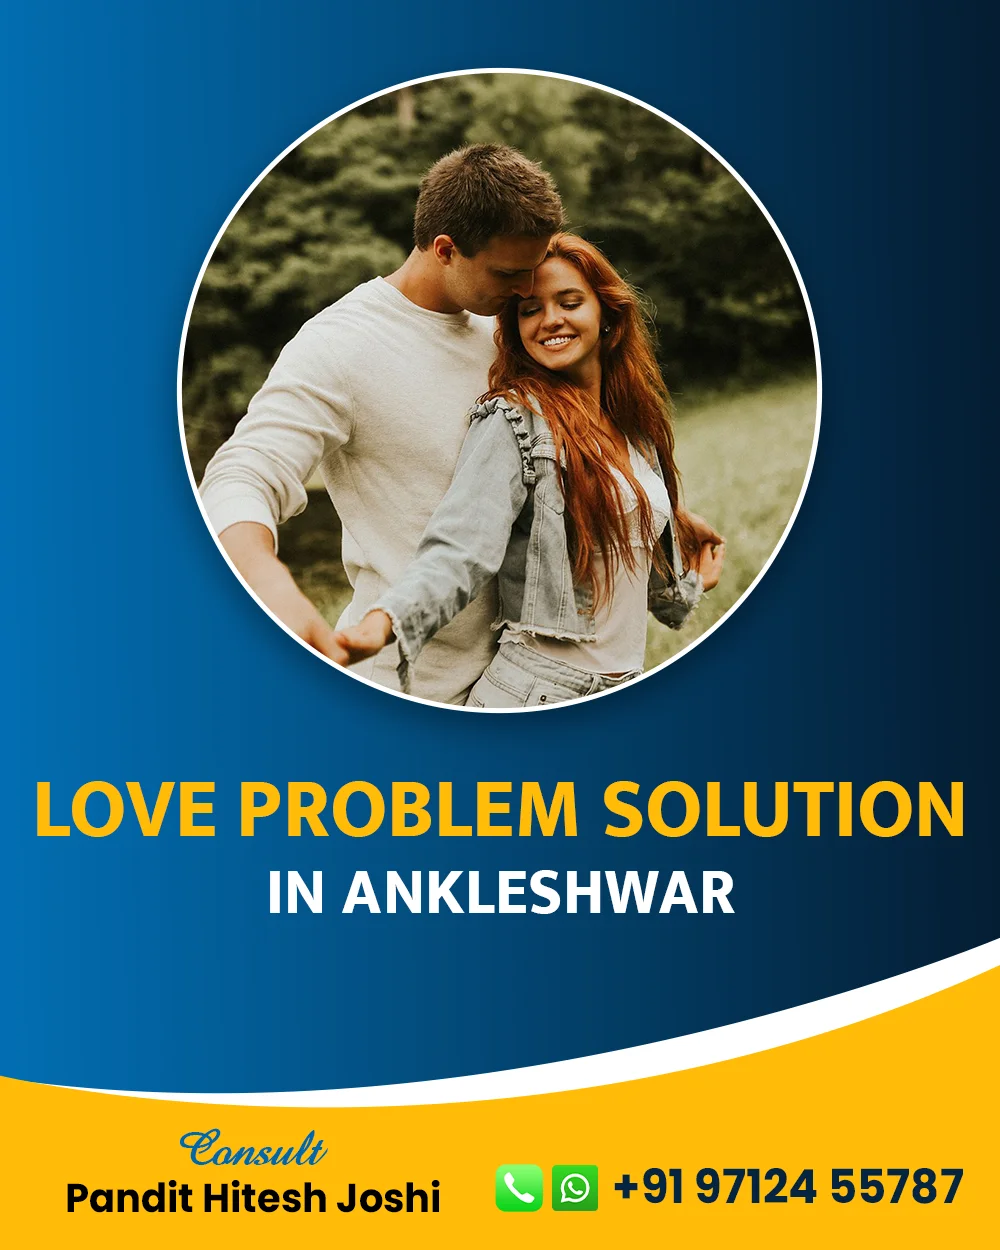 Love Problem Solution in Ankleshwar